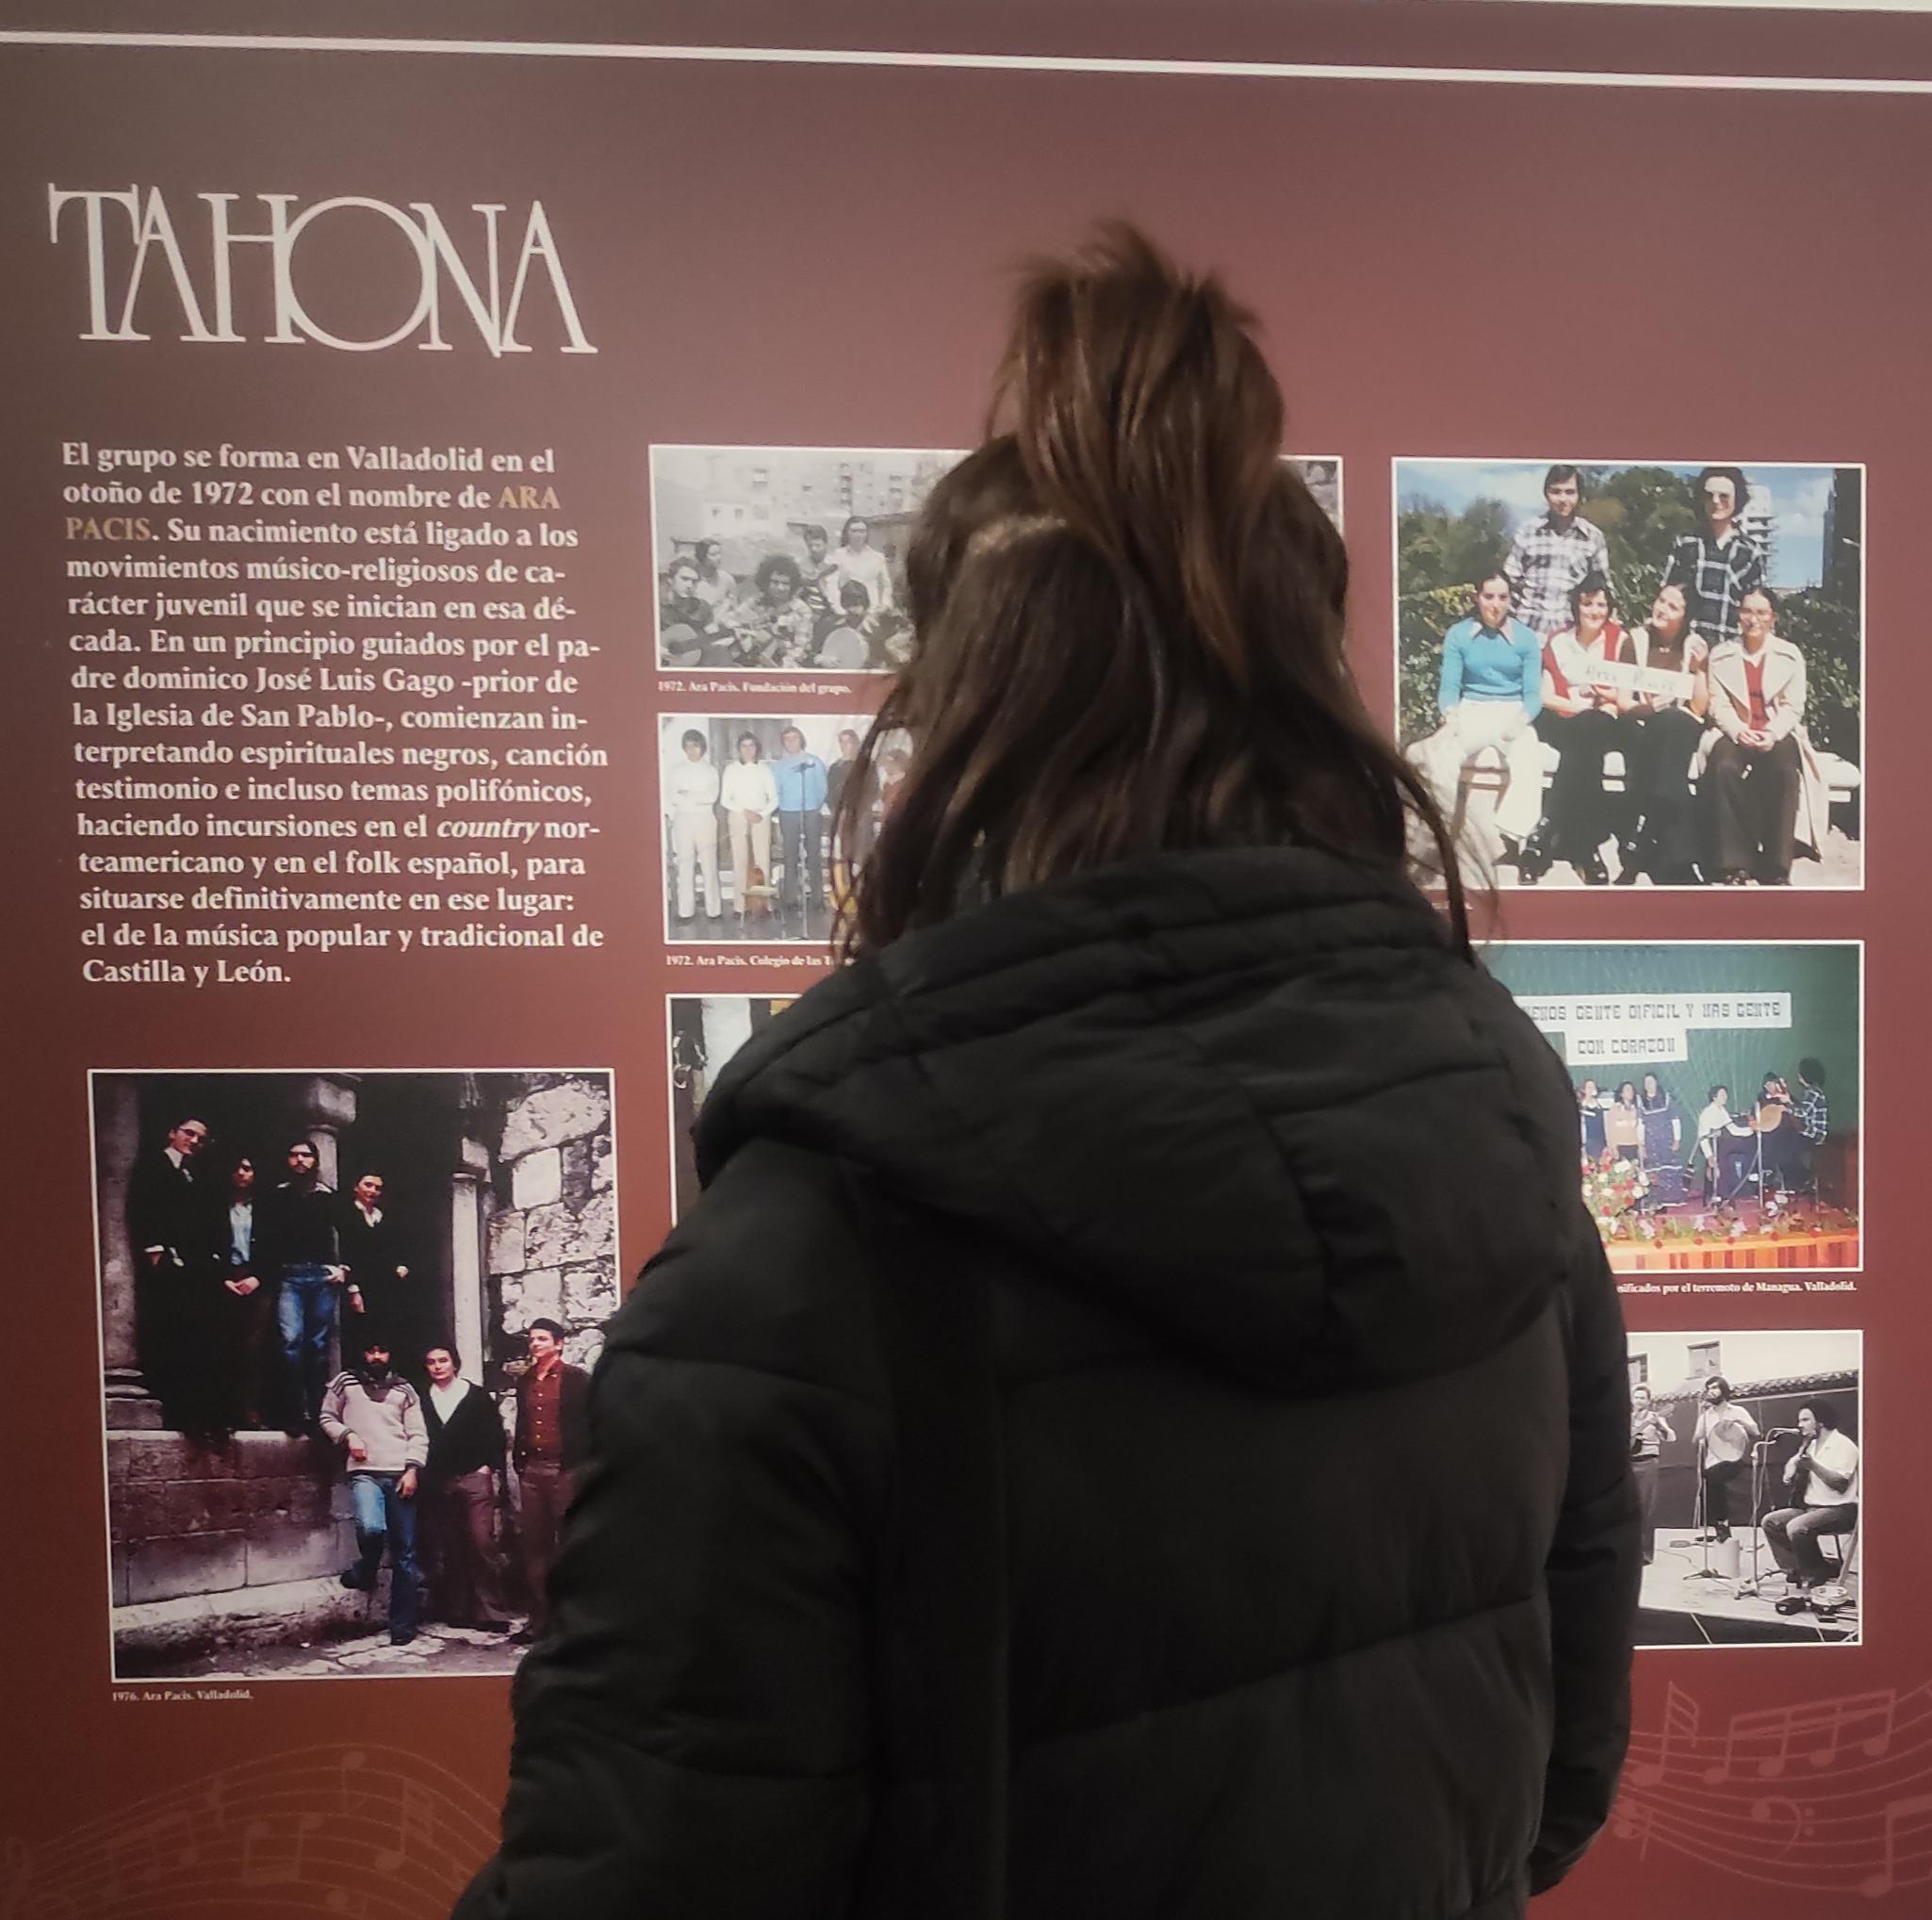 Mujer viendo tríptico de la exposición Tahona